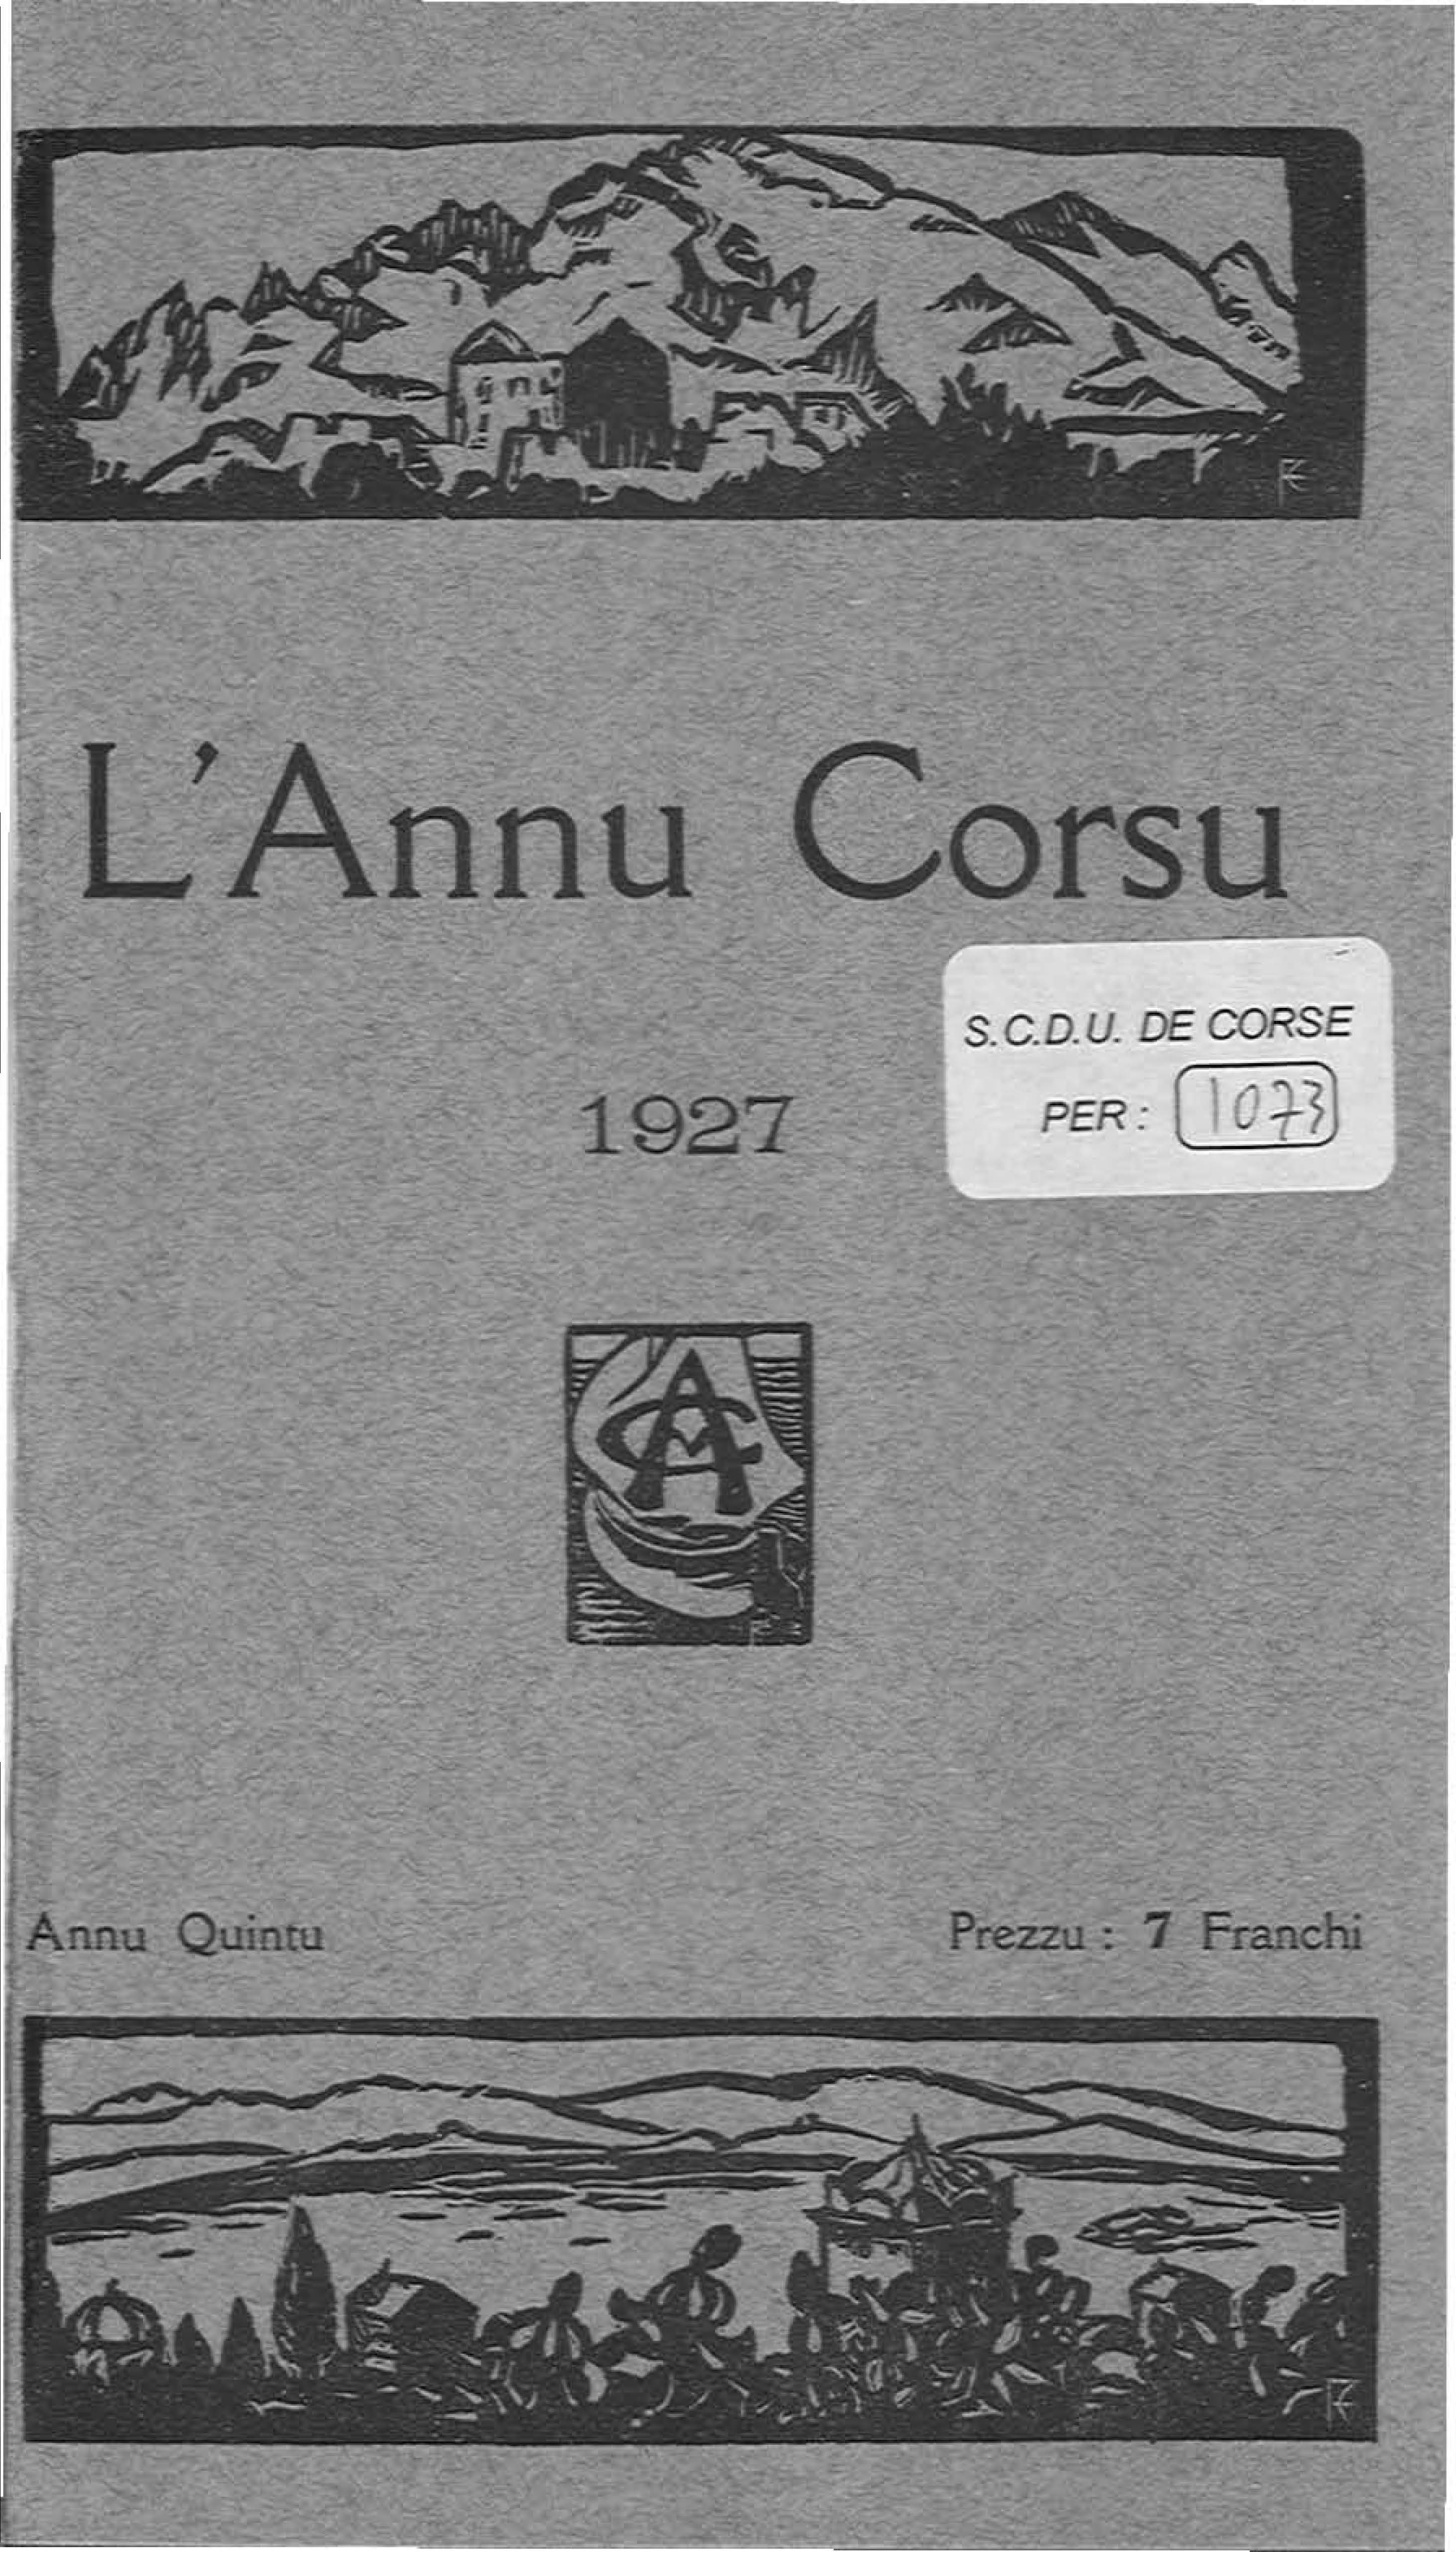 L'Annu Corsu (1926)